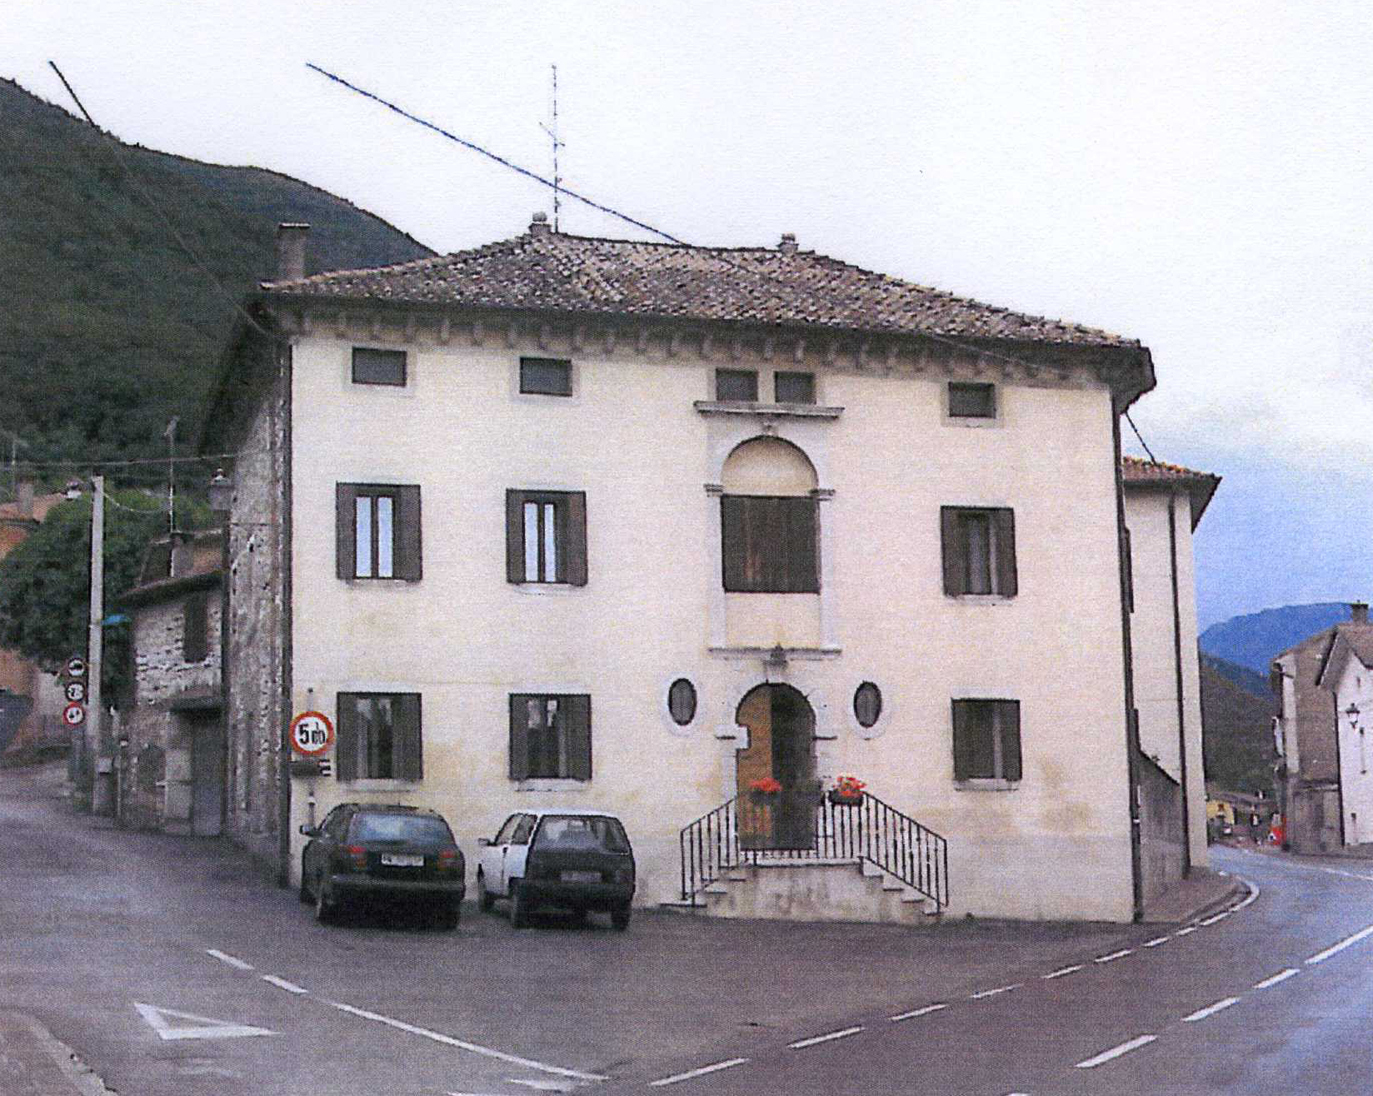 Casa Canonica di Lago (canonica) - Revine Lago (TV)  (XVIII)